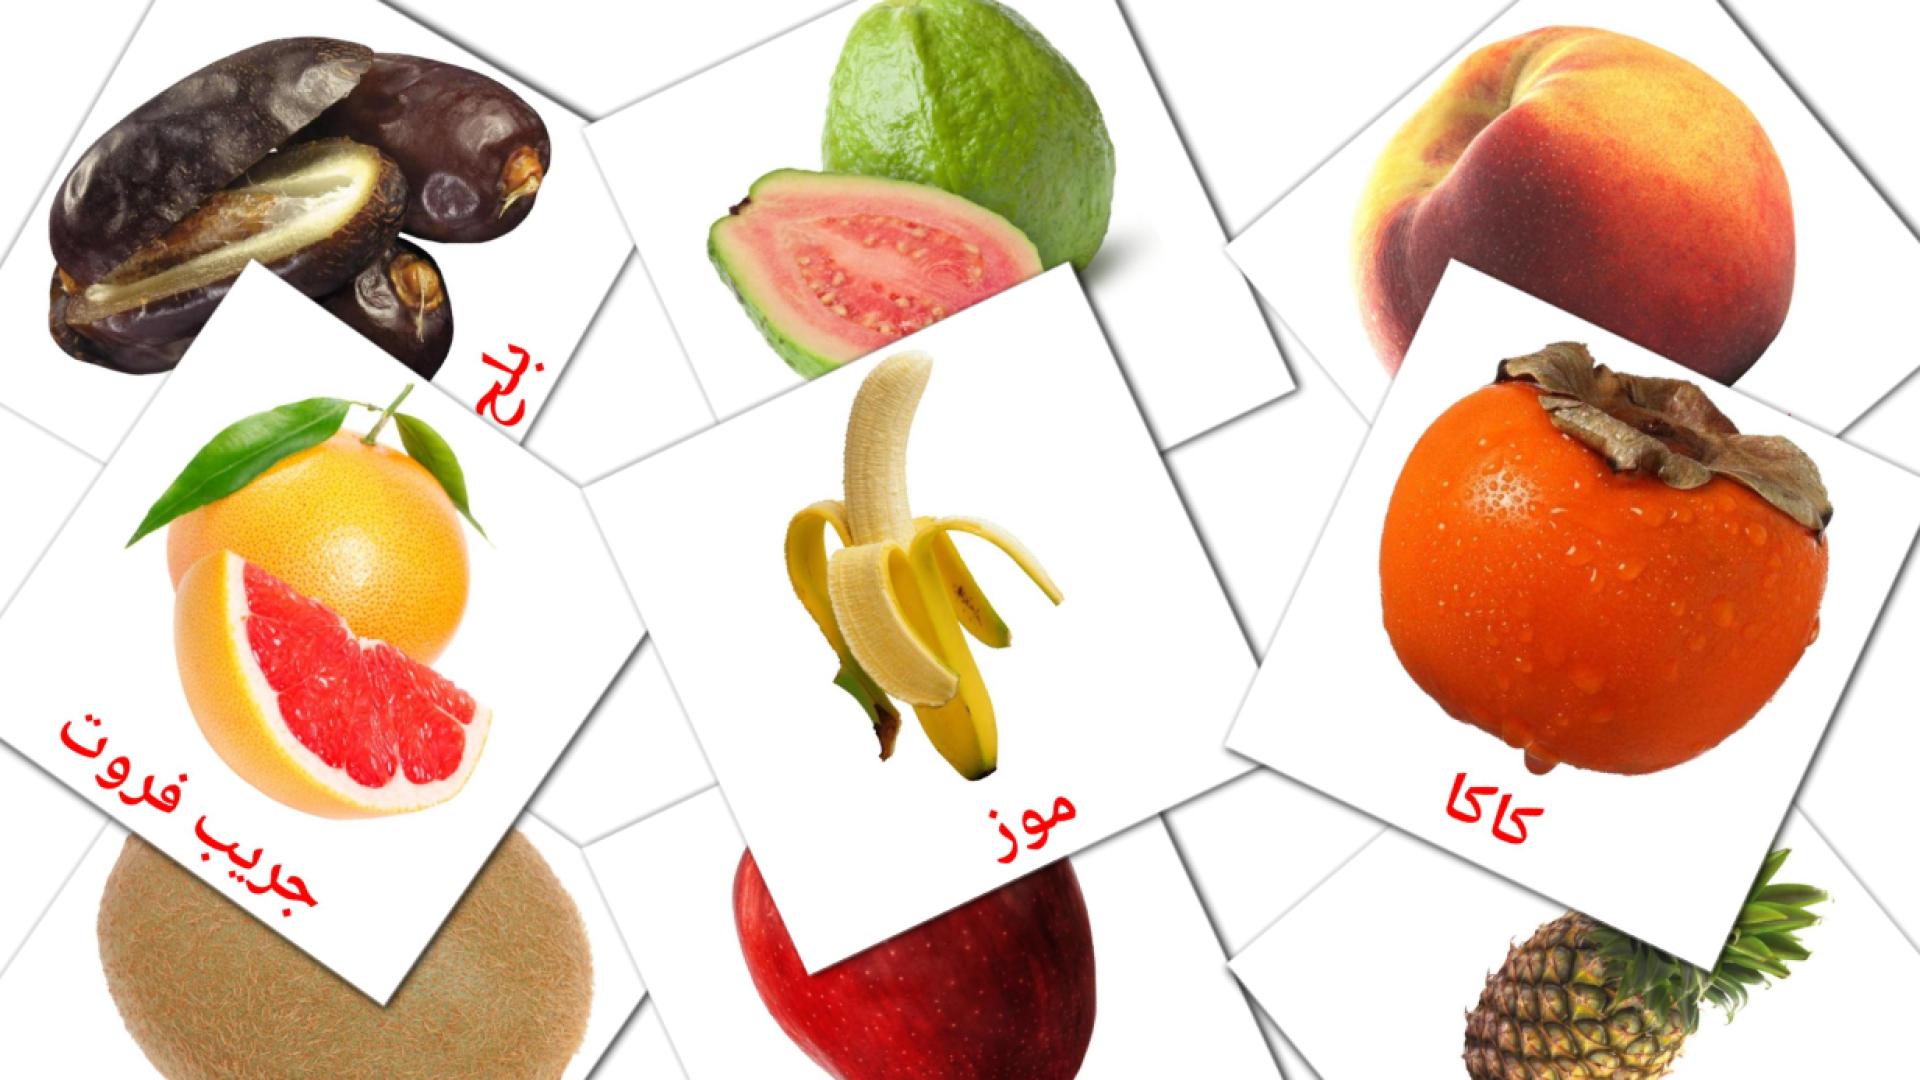 Fruits flashcards